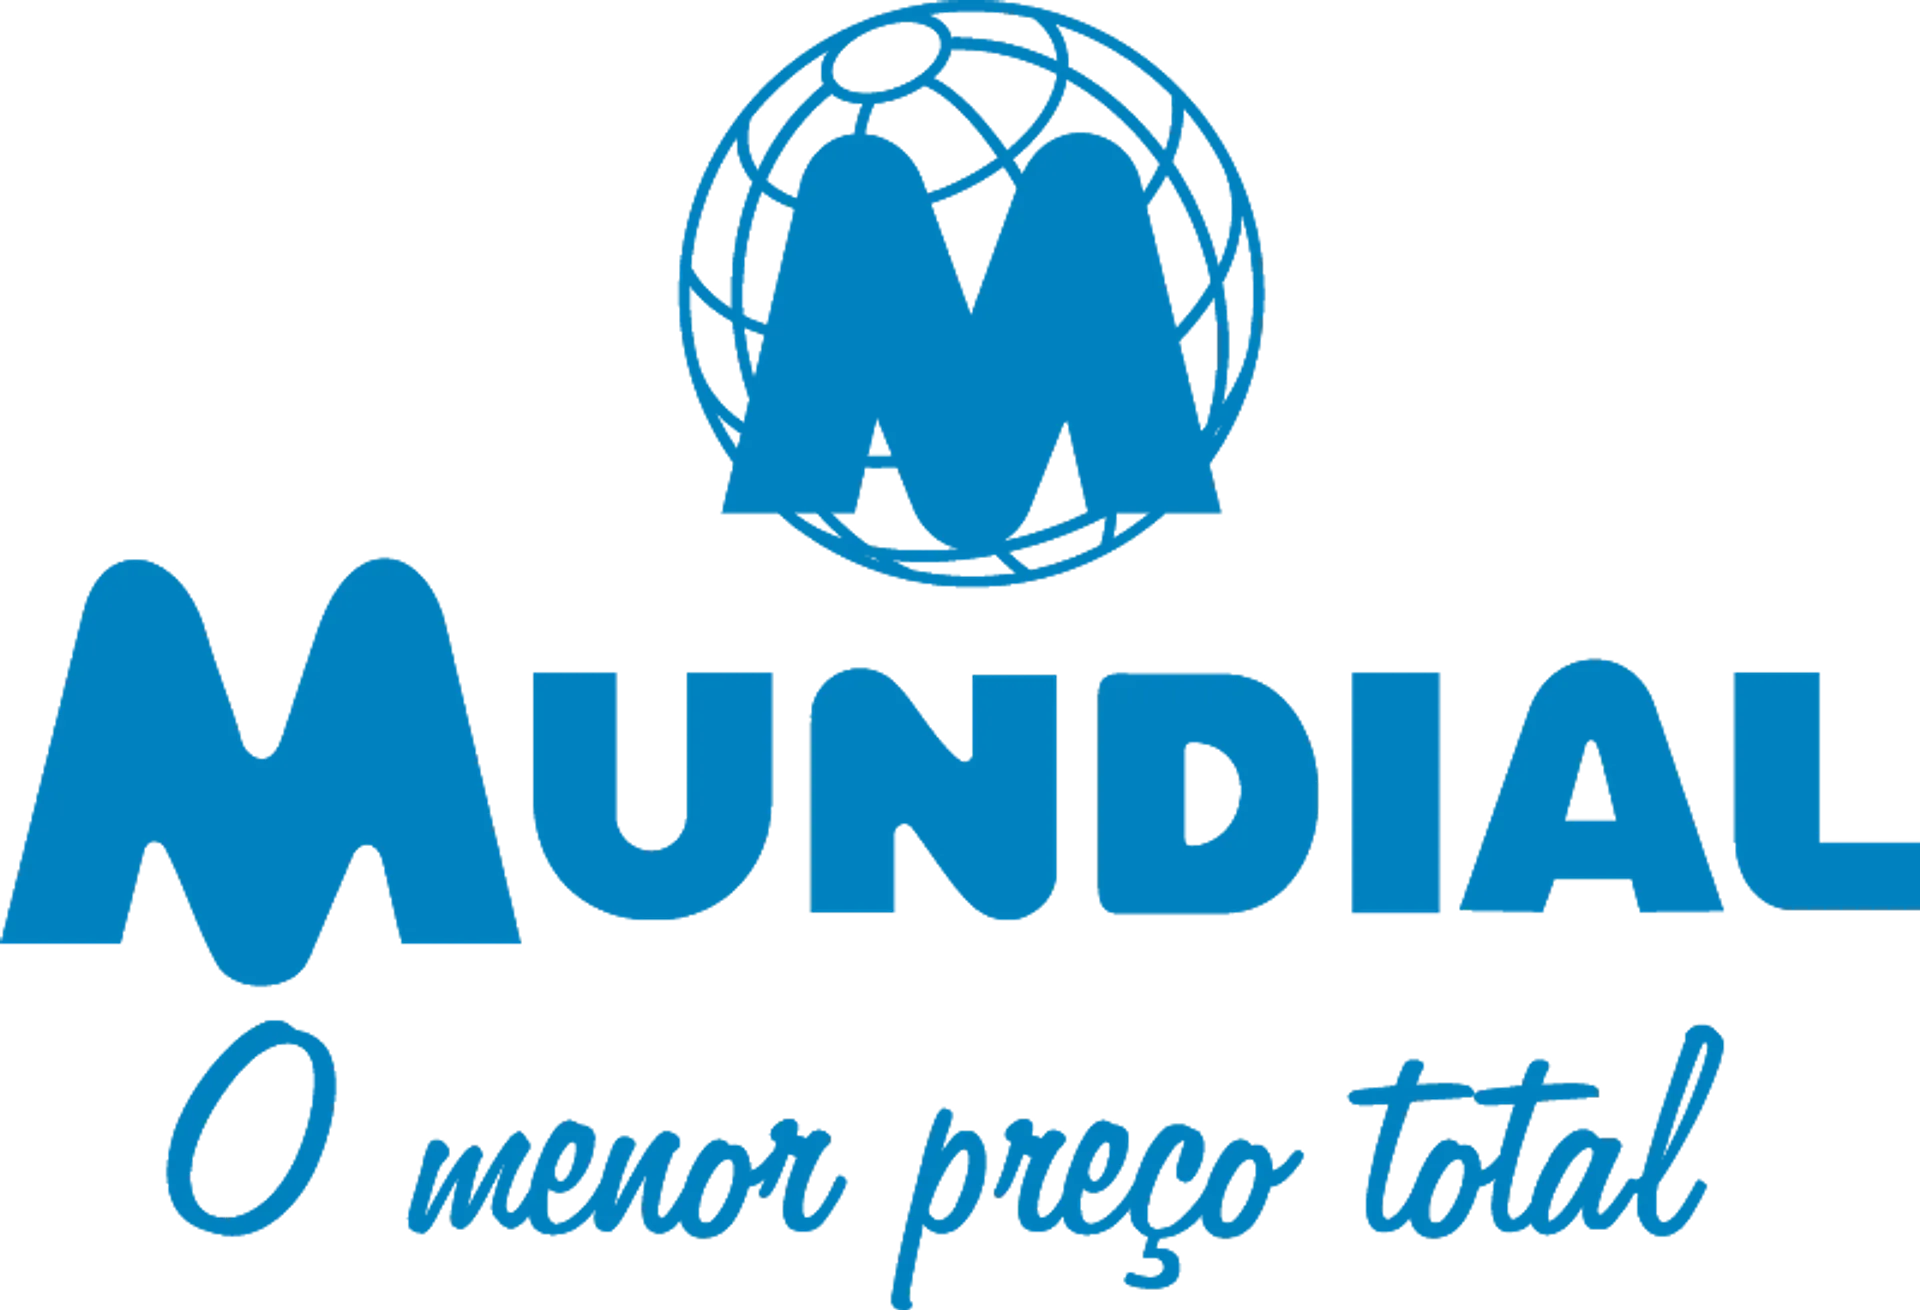 SUPERMERCADOS MUNDIAL logo